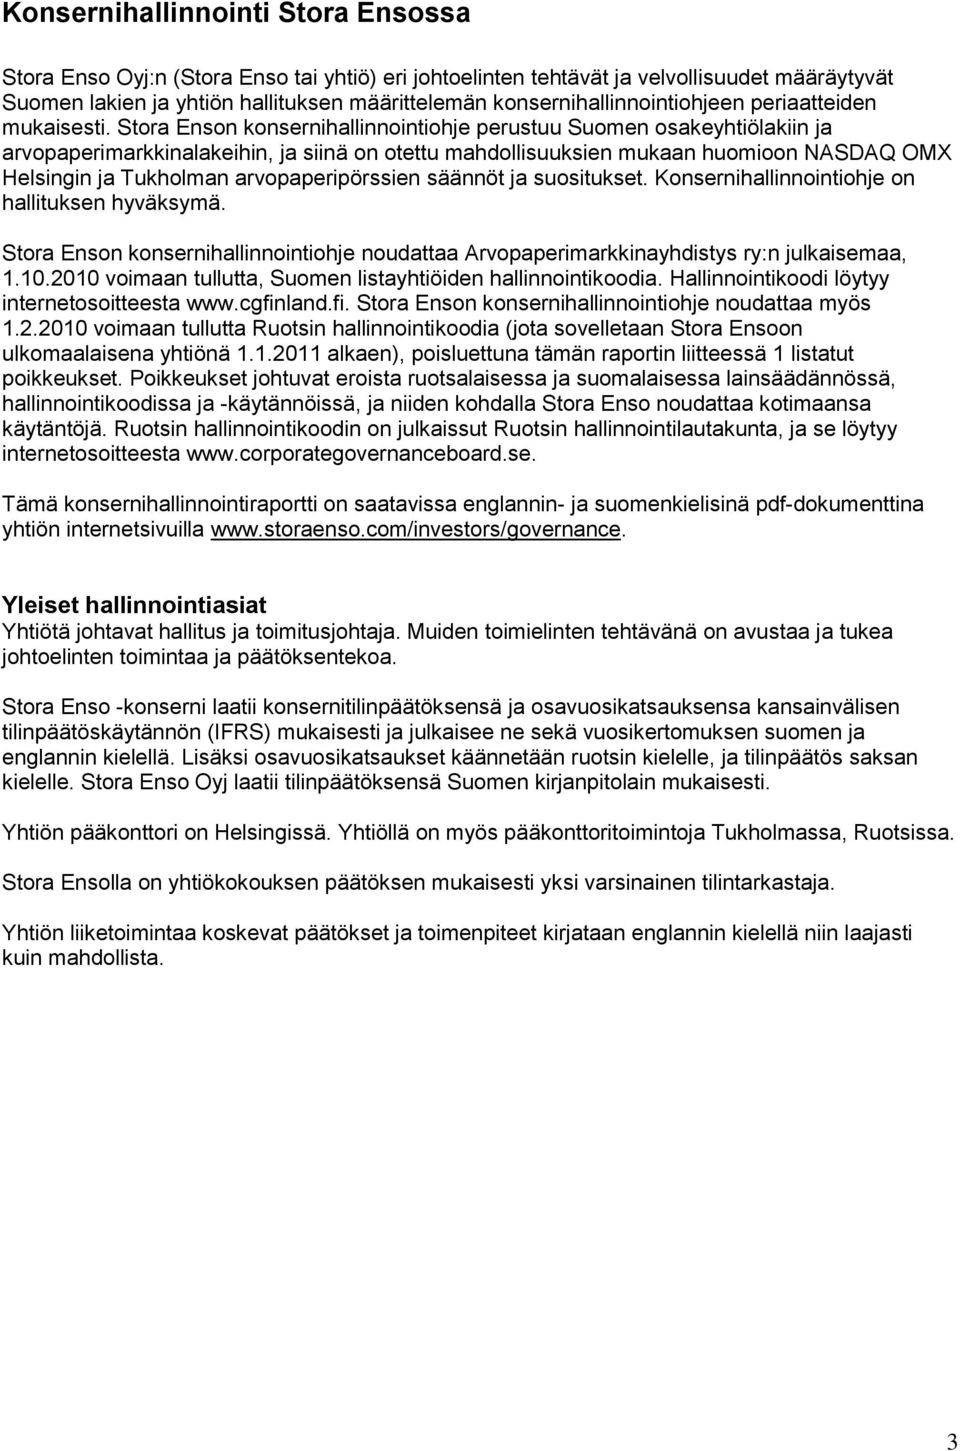 Stora Enson konsernihallinnointiohje perustuu Suomen osakeyhtiölakiin ja arvopaperimarkkinalakeihin, ja siinä on otettu mahdollisuuksien mukaan huomioon NASDAQ OMX Helsingin ja Tukholman